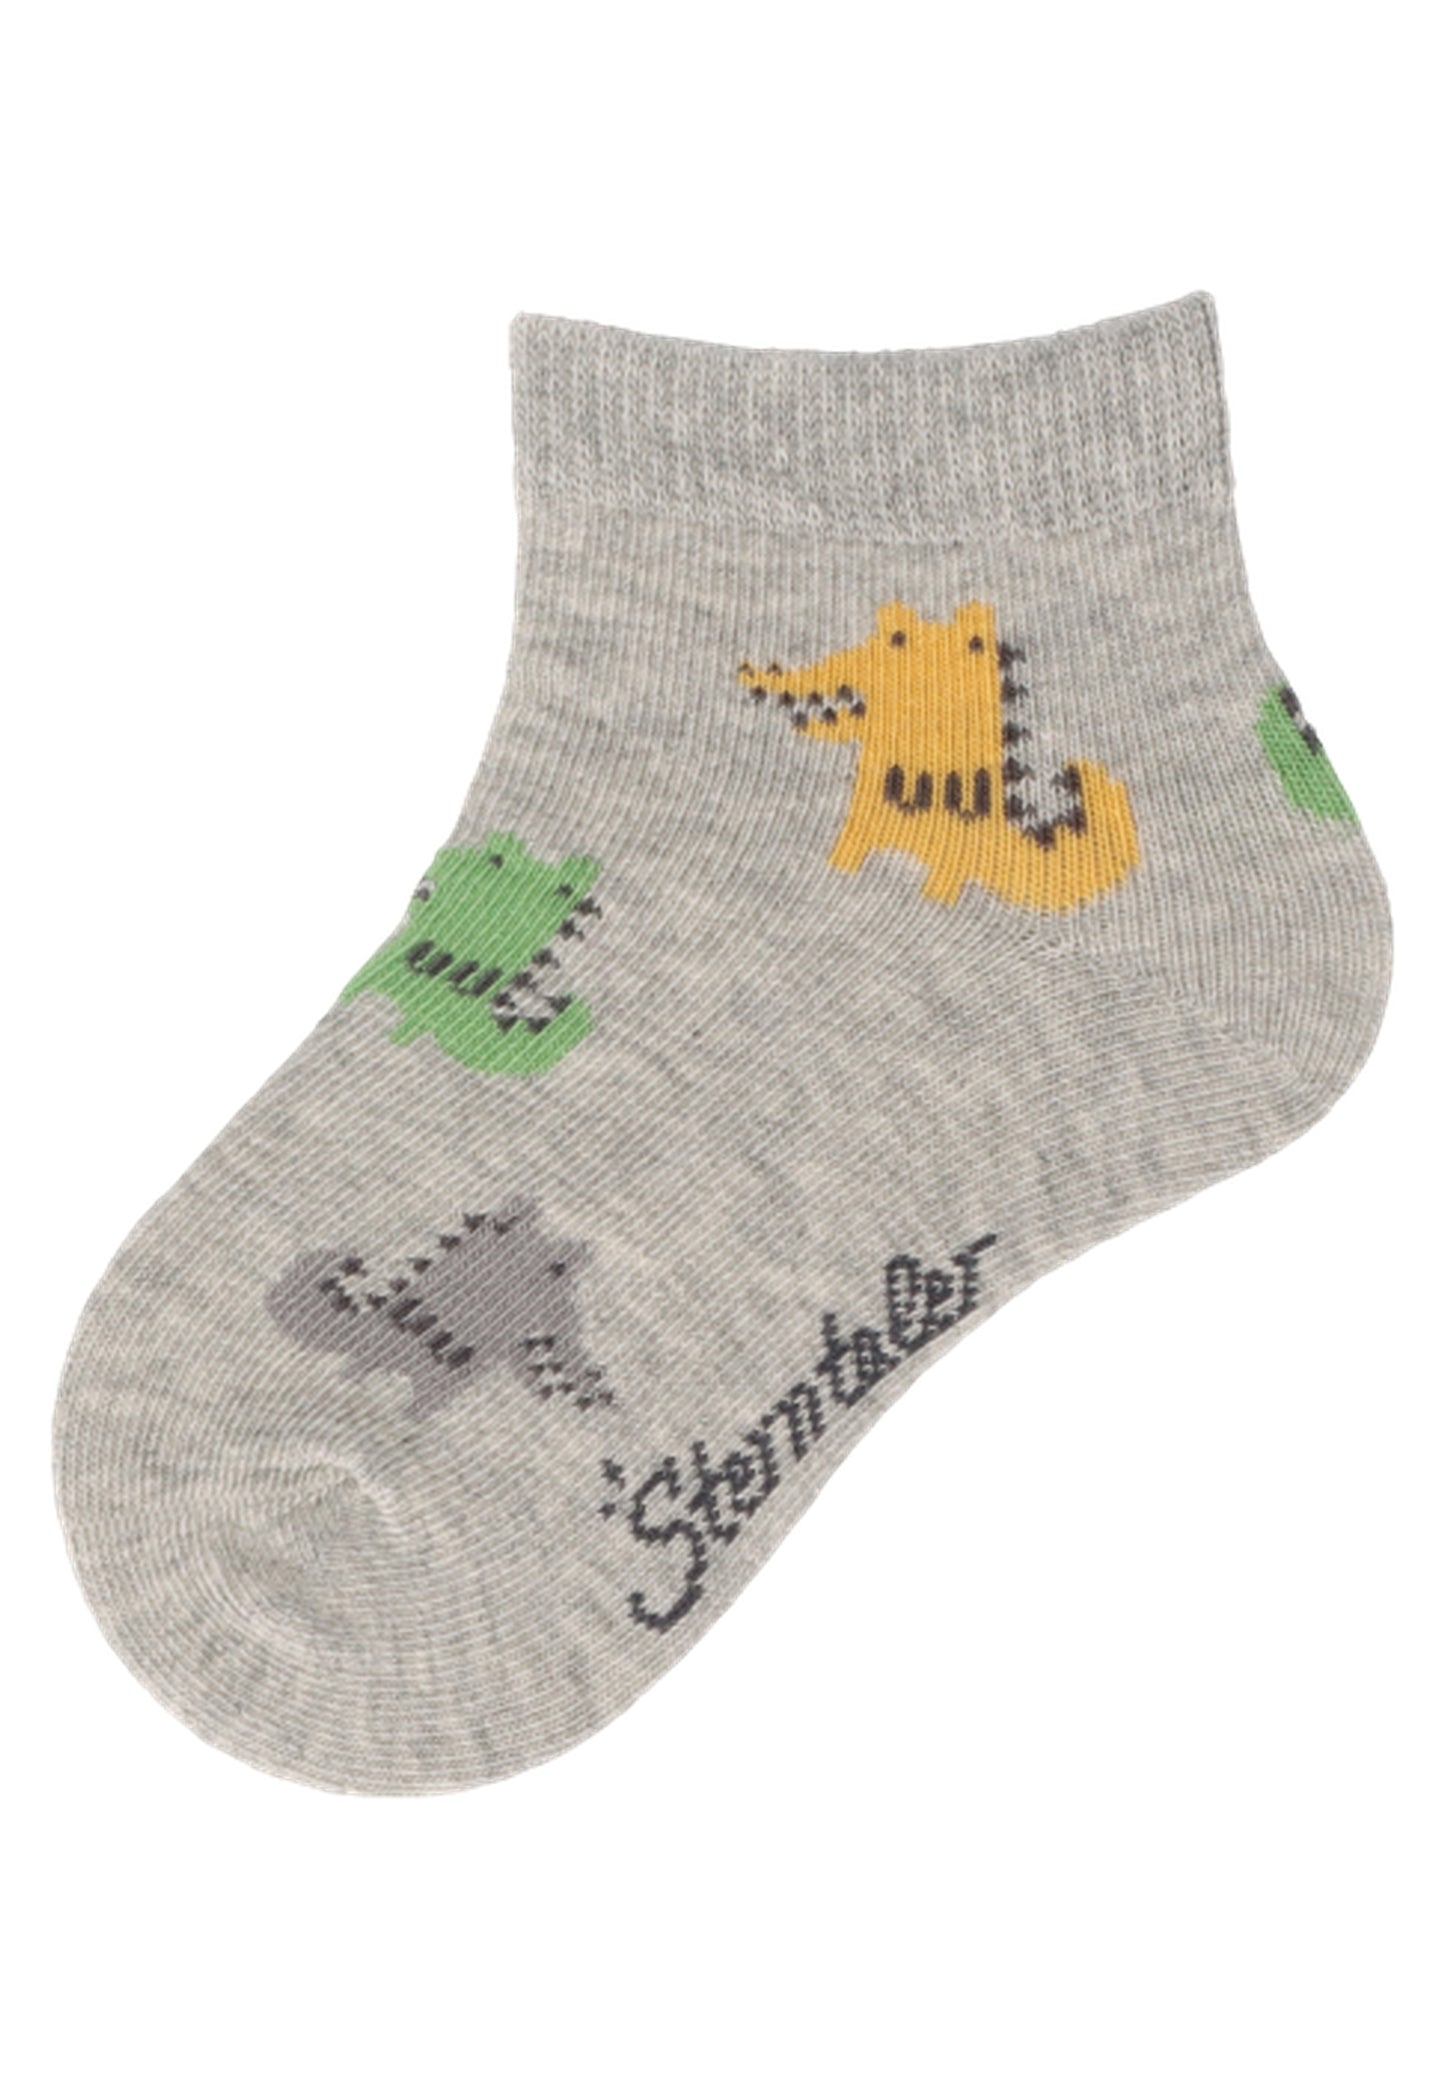 Kurz-Socken 3er-Pack Tiere